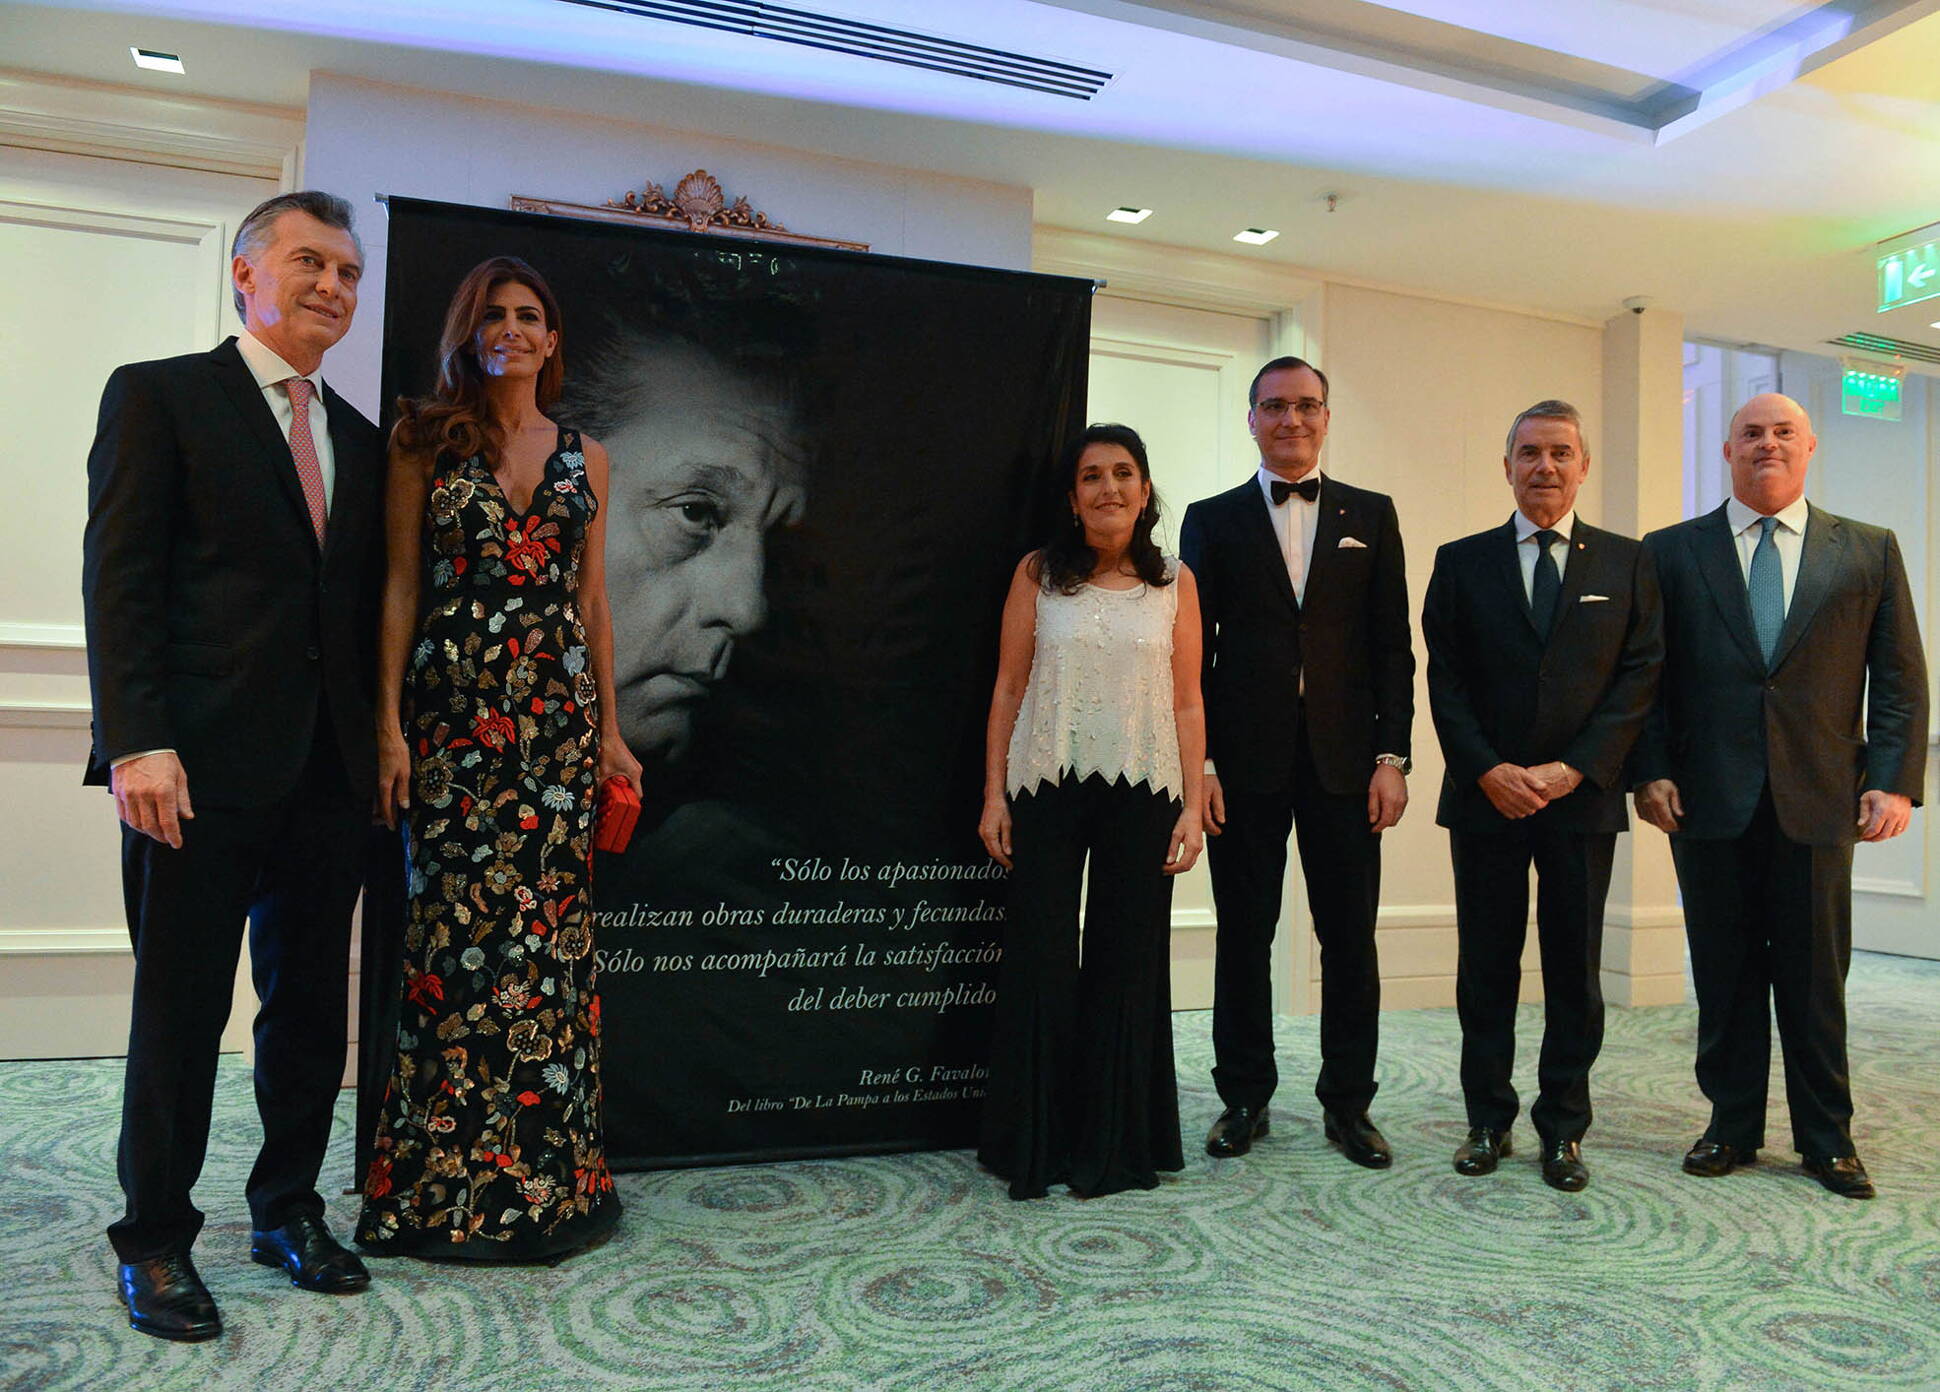 El Presidente Macri asistió a una cena de homenaje al médico René Favaloro